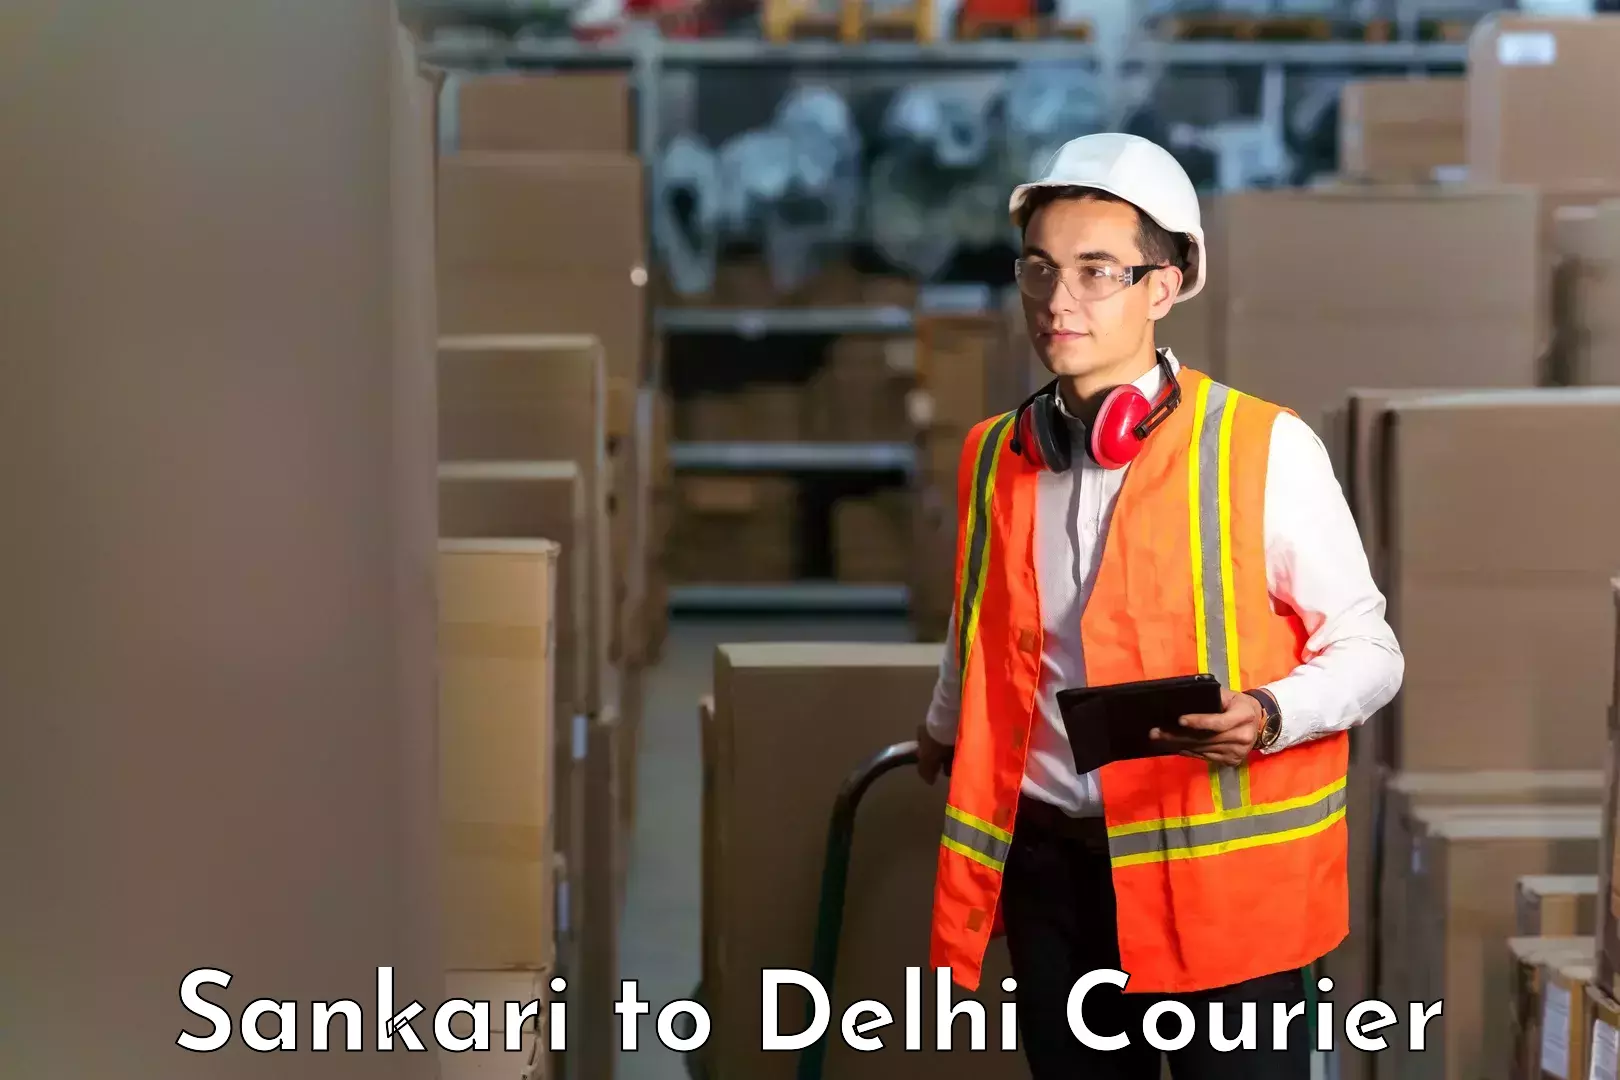 On-call courier service Sankari to Delhi